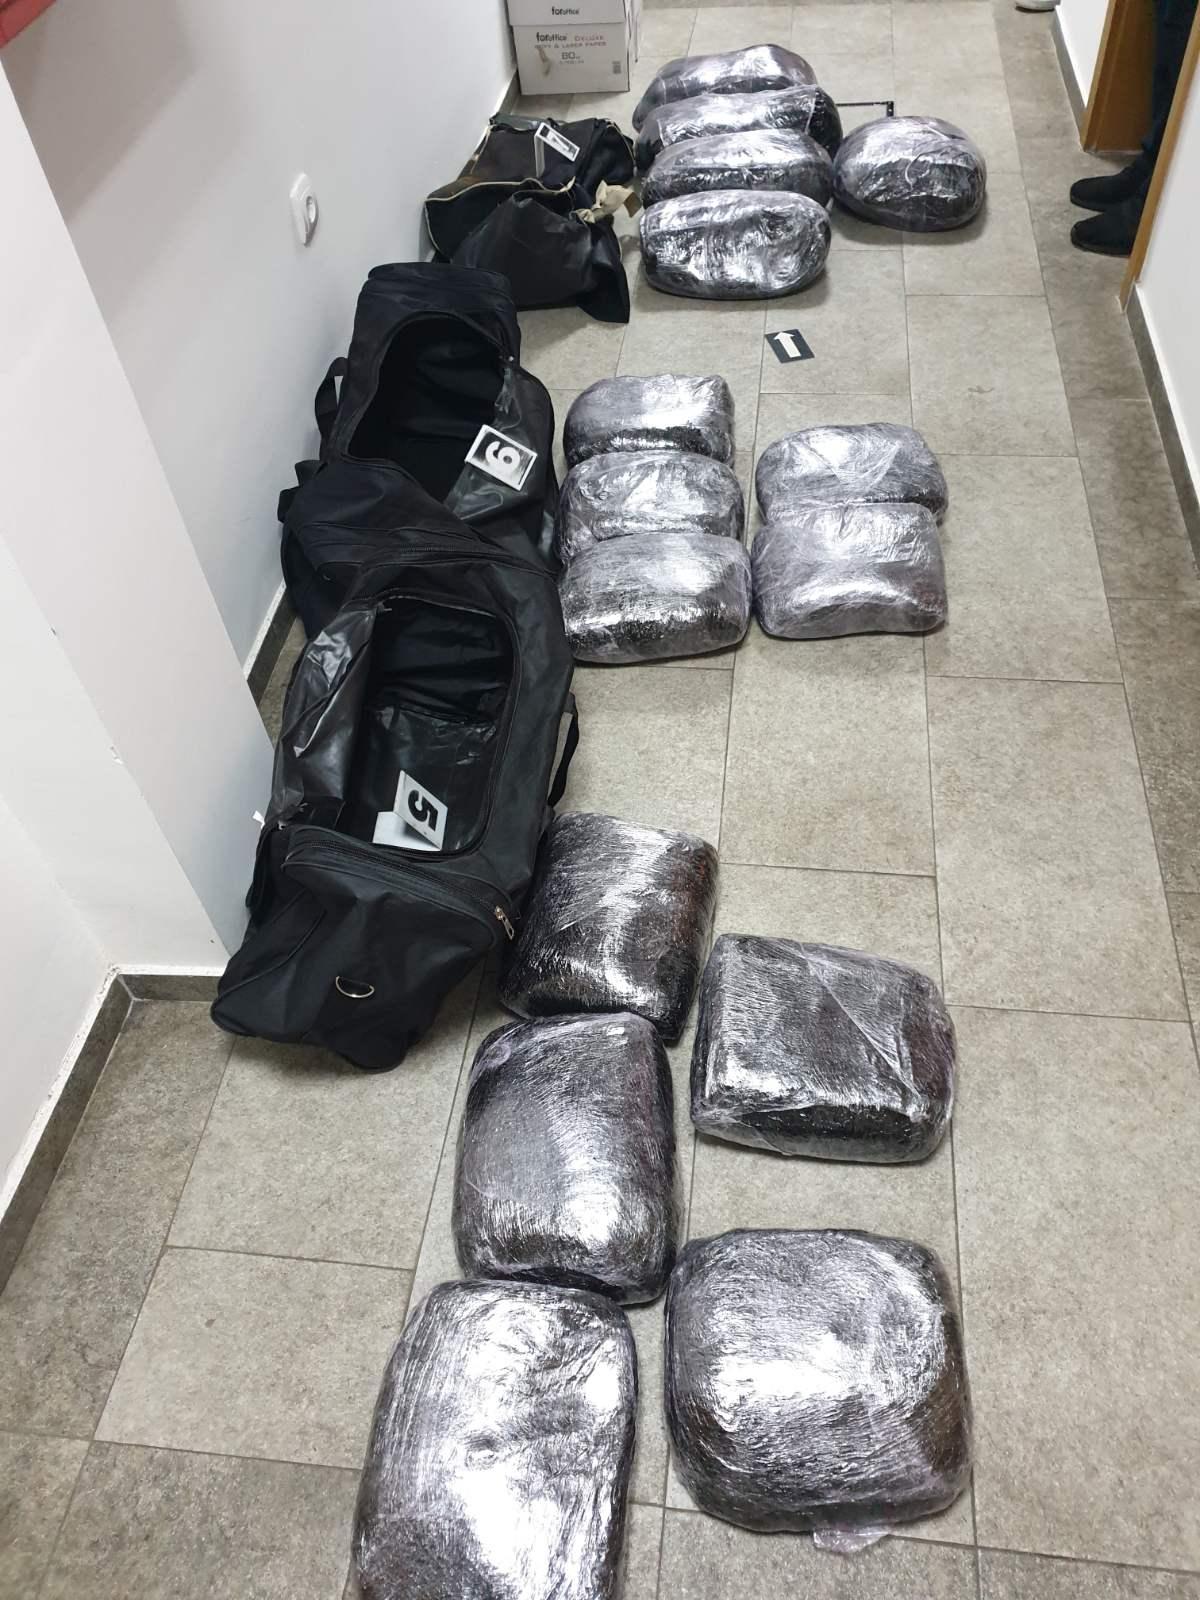 Zaplijenjeno 103 kilograma smjese za lijekove, uhapšena jedna osoba